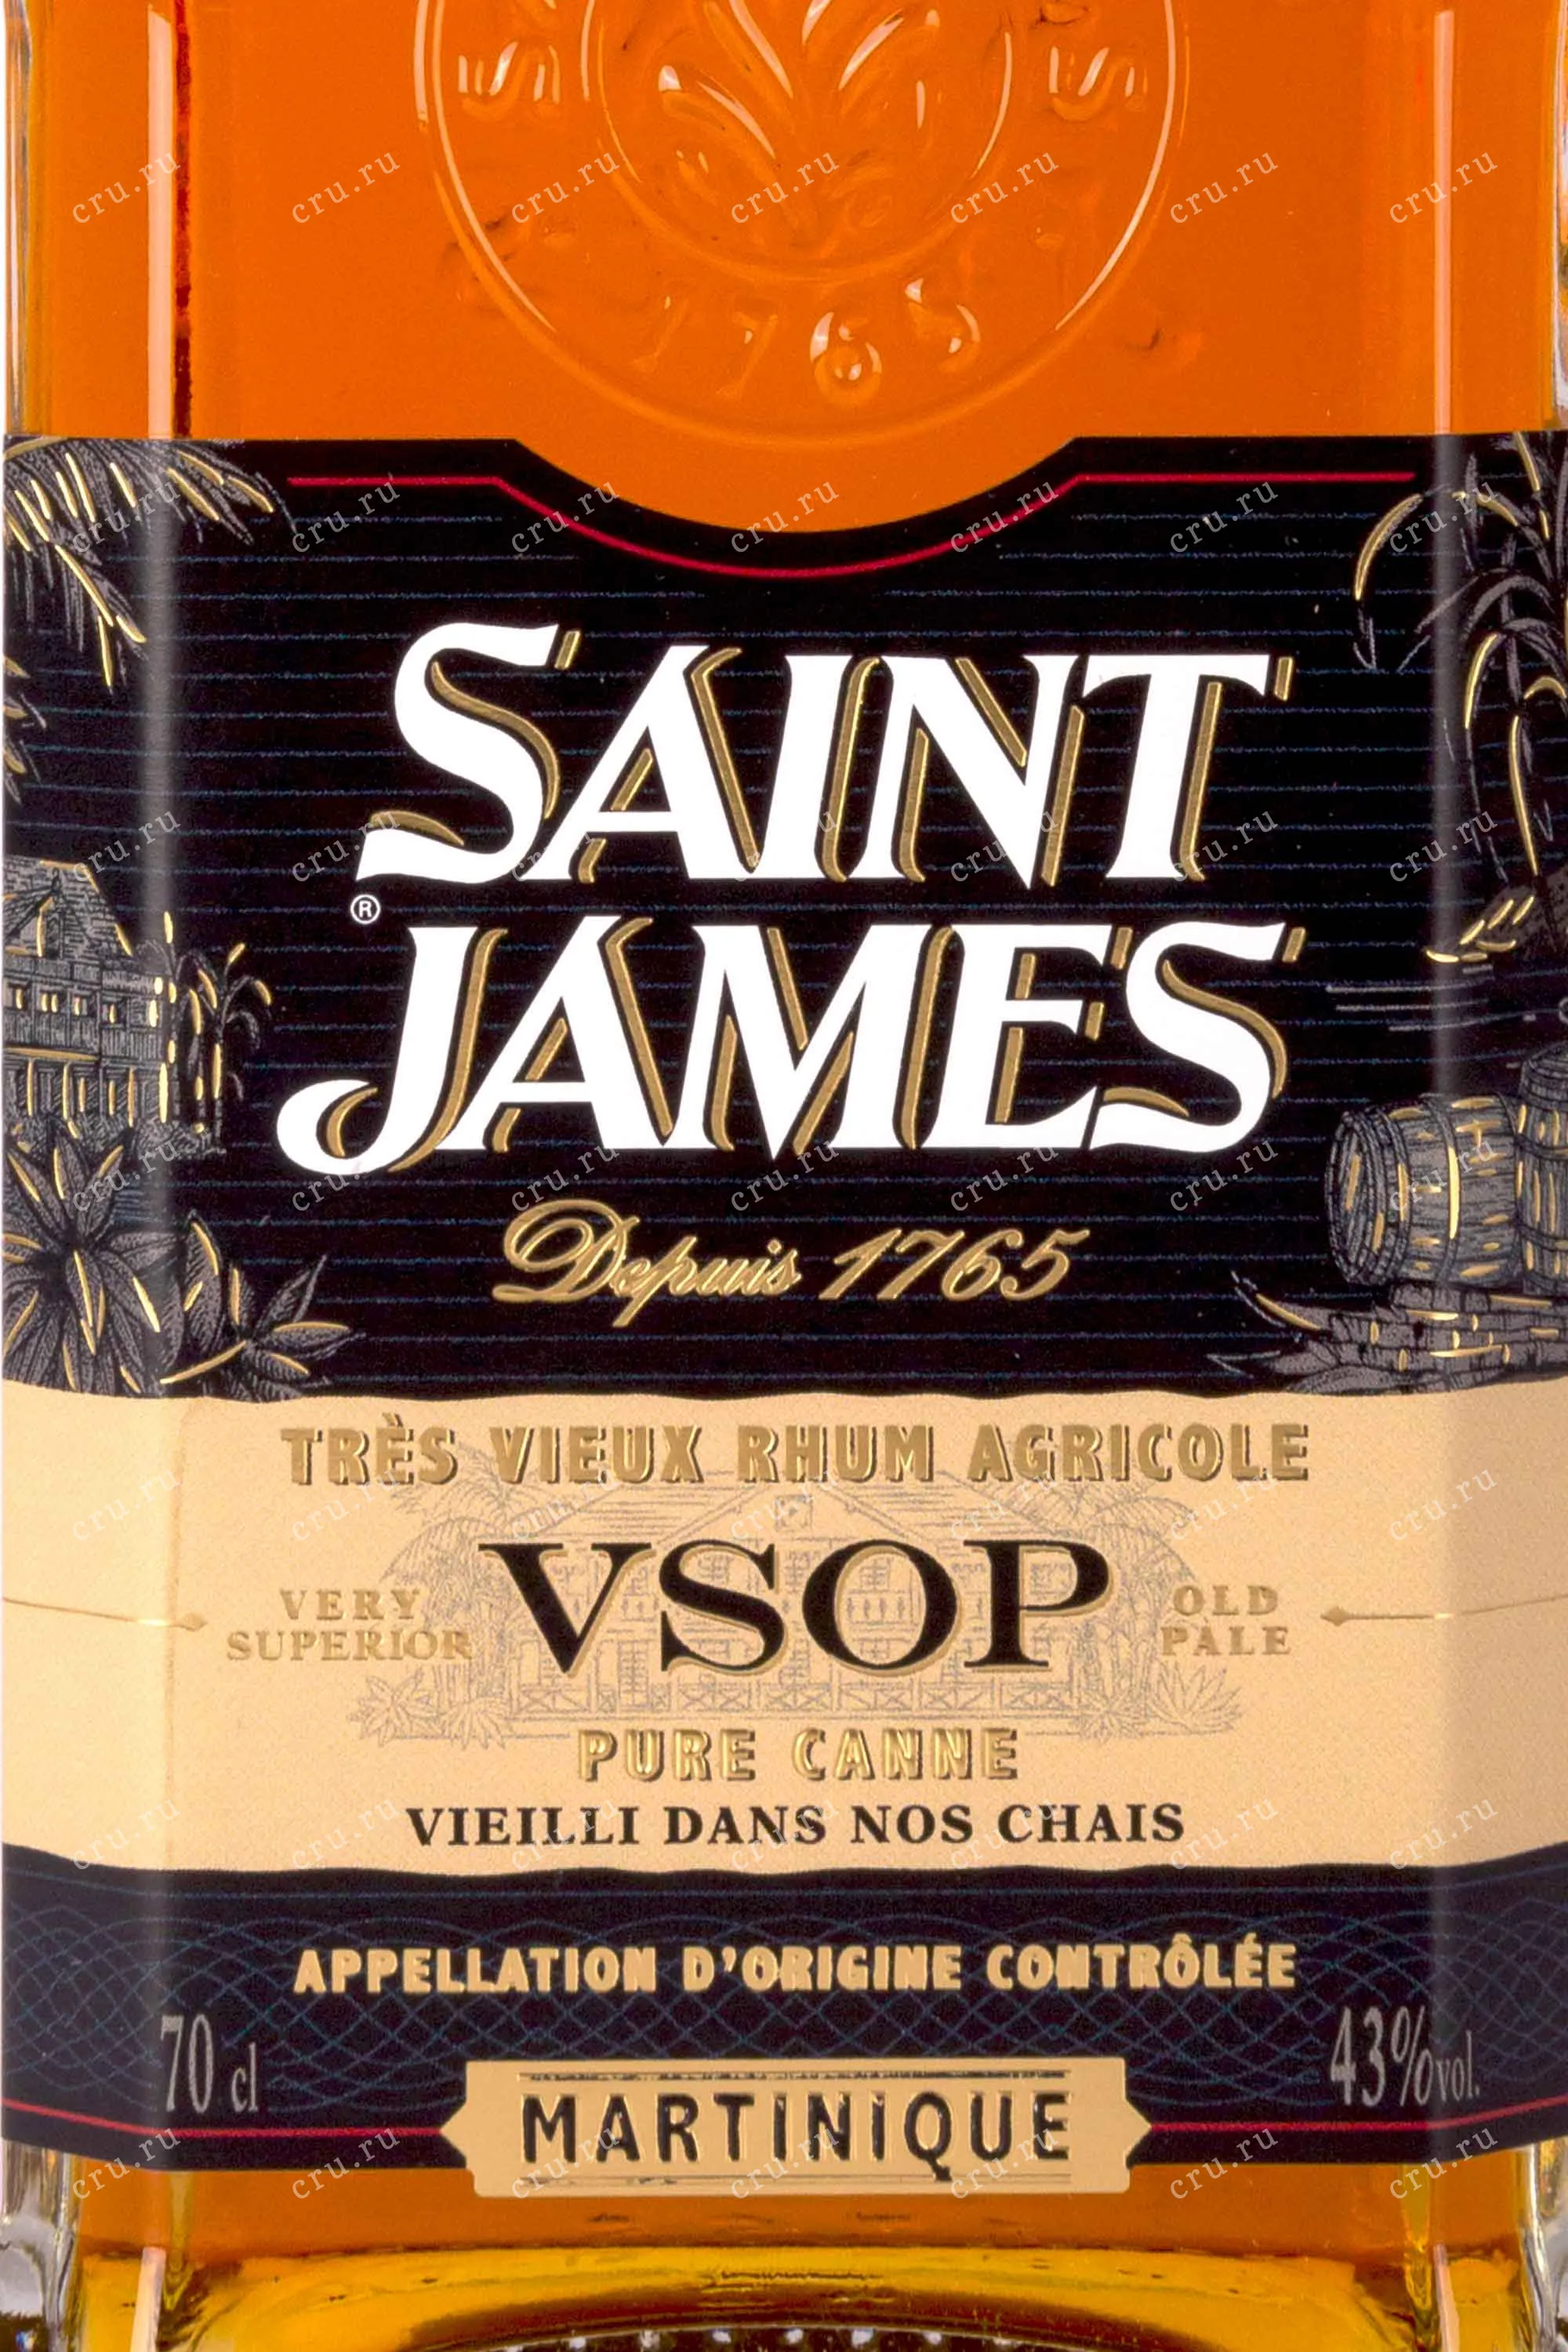 Saint James - VSOP - Très vieux rhum agricole